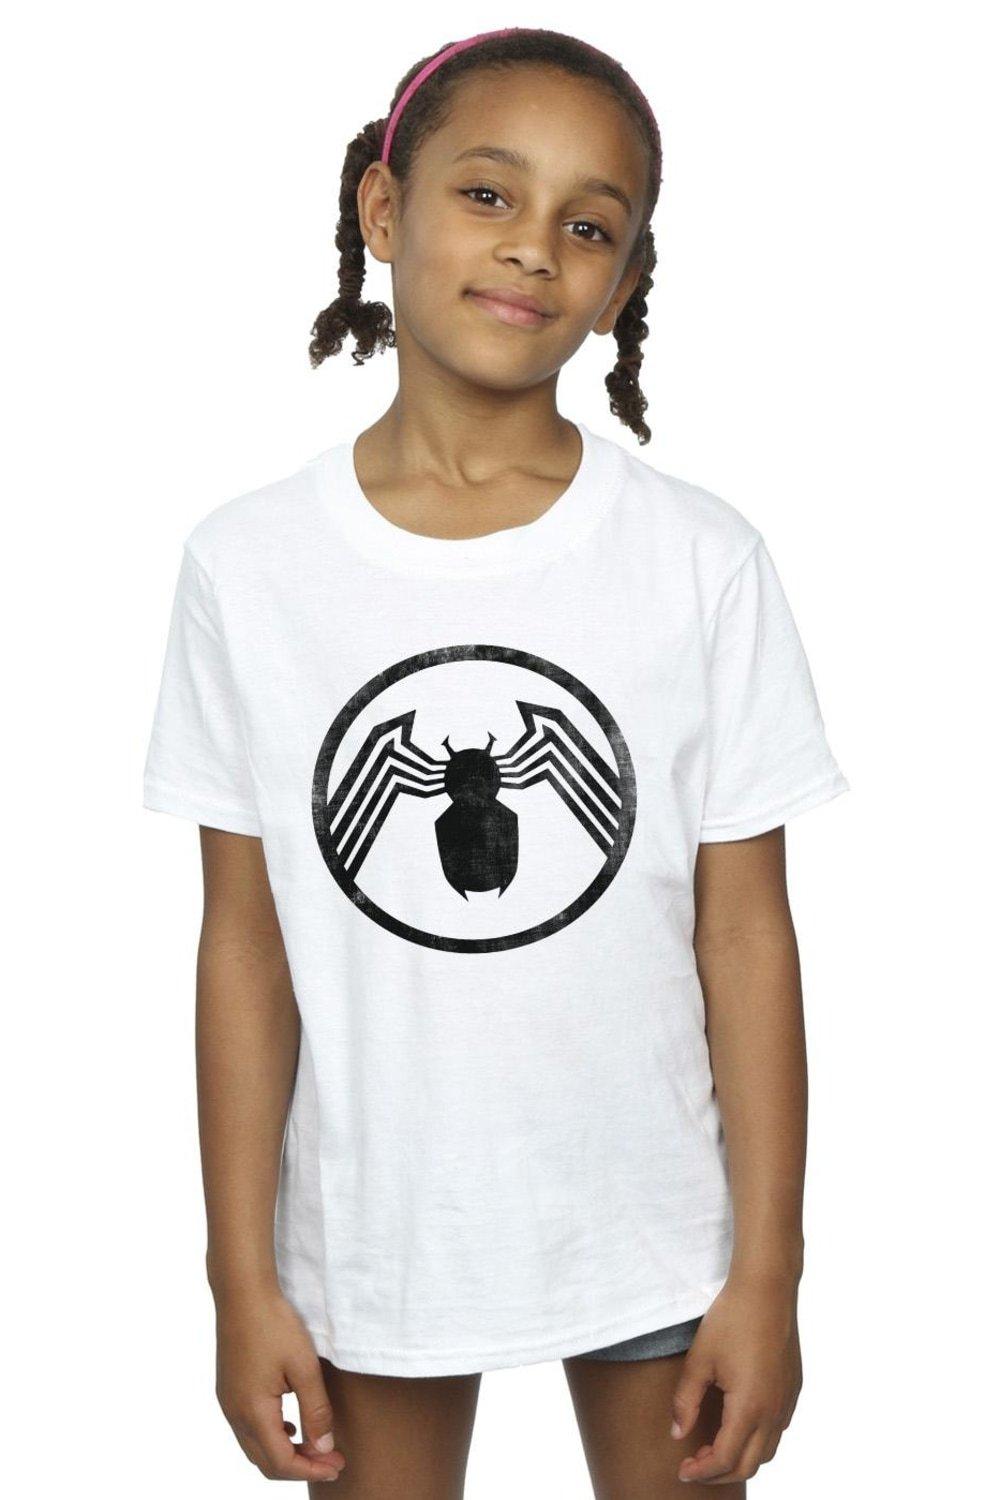 хлопковая футболка с логотипом box marvel белый Хлопковая футболка с логотипом Venom Marvel, белый